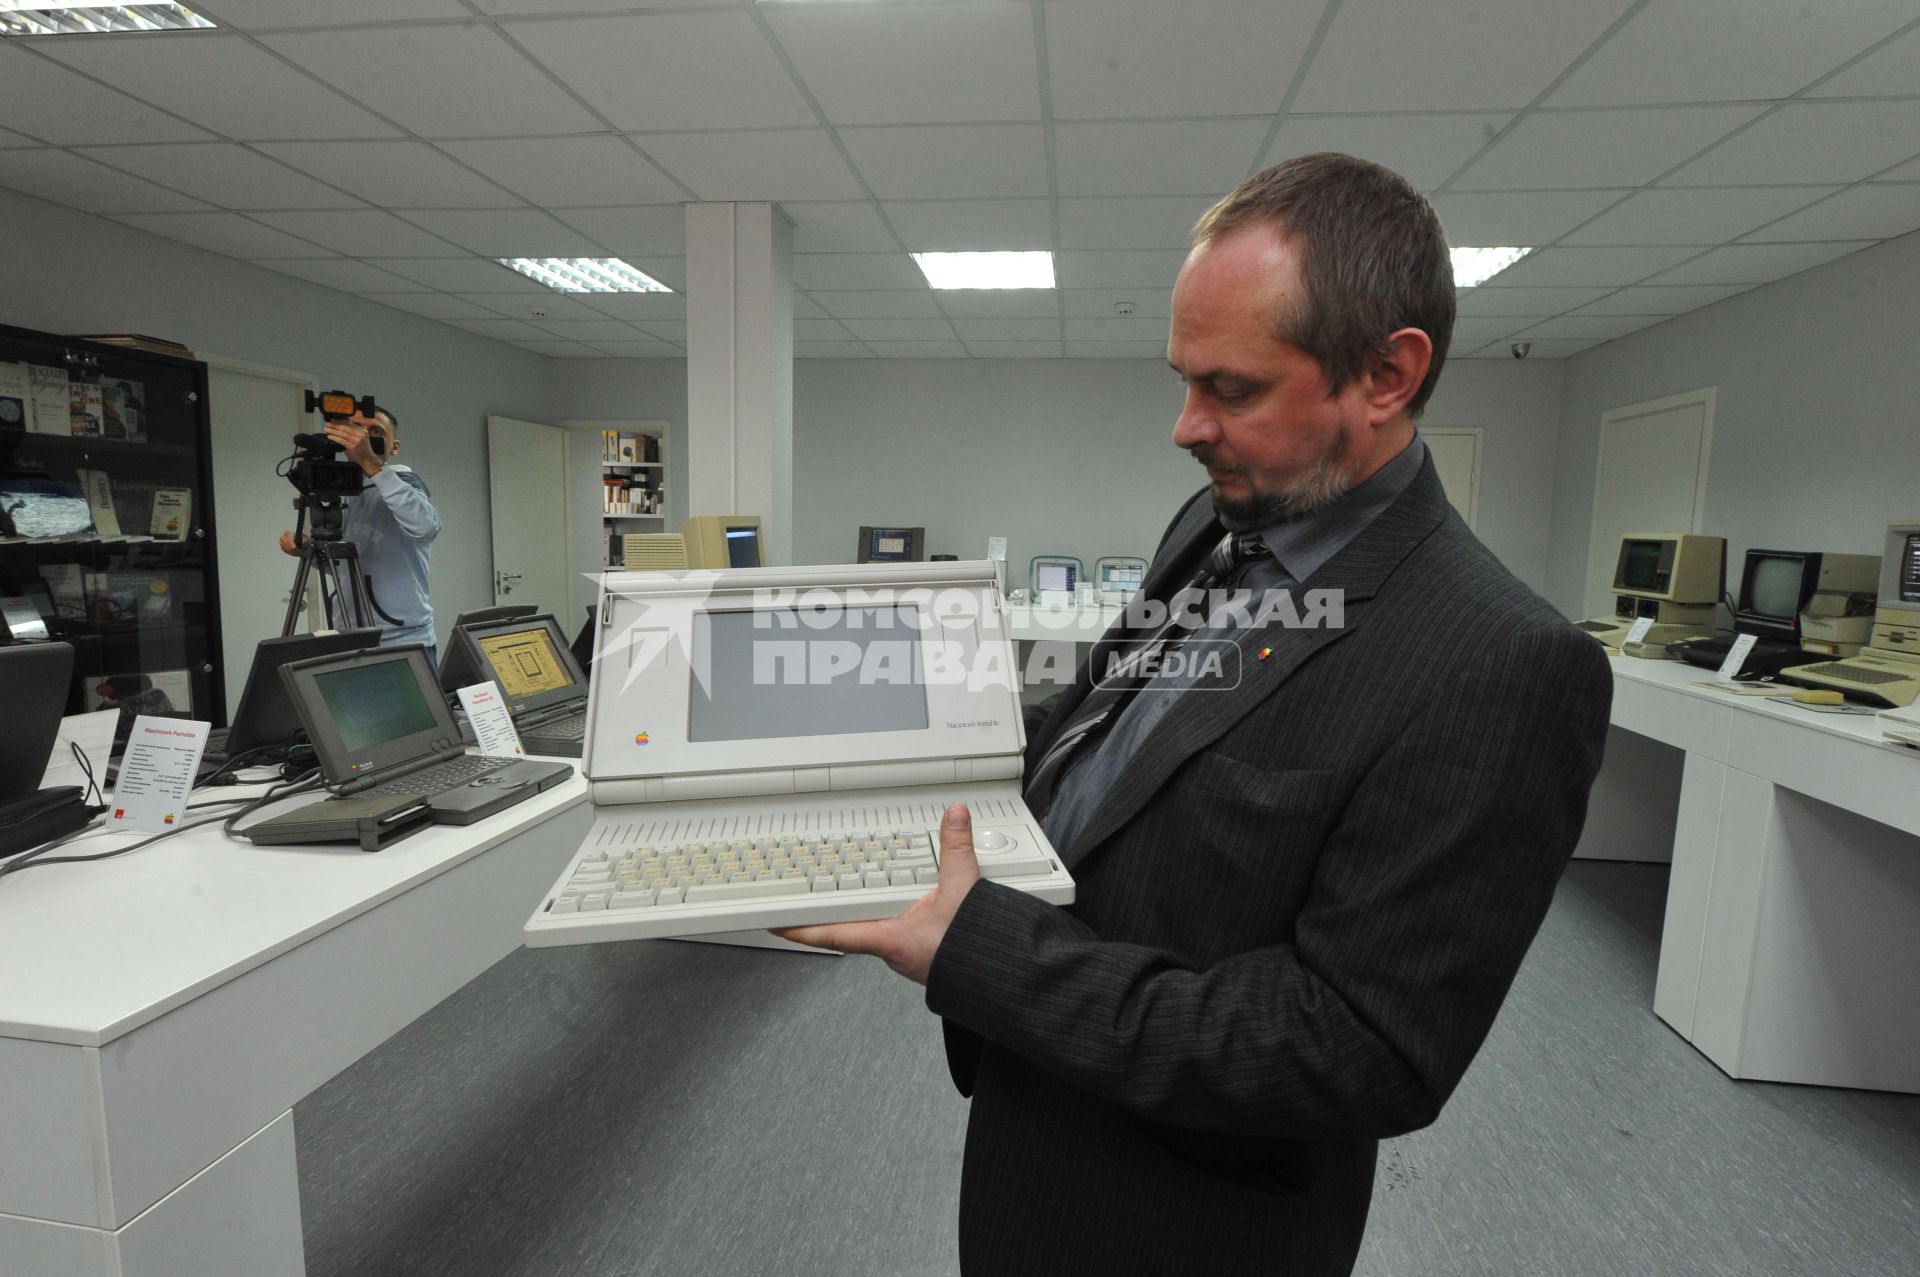 В Москве открылся музей Apple. На снимке: собиратель экспонатов музея Андрей Антонов держит в руках Mac portable.